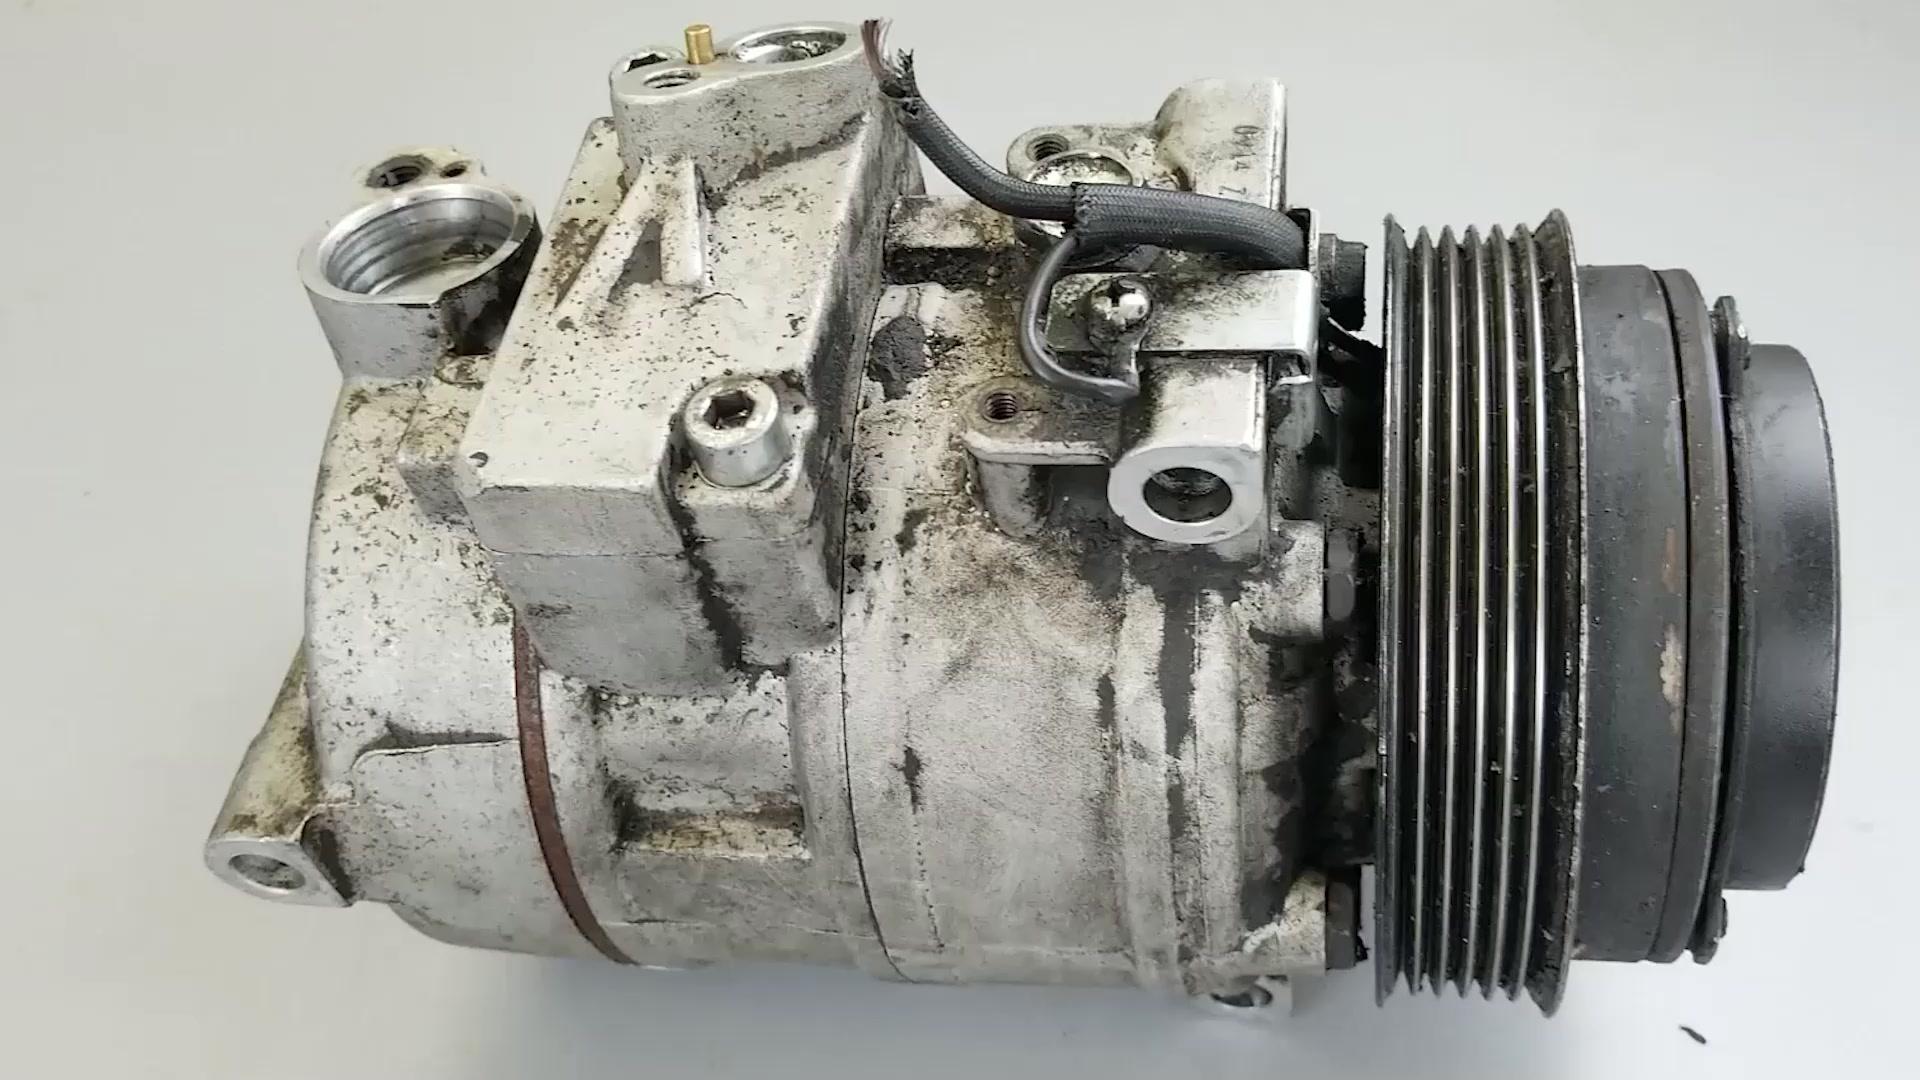 拆解汽车空调压缩机，看看它内部构造以及工作原理.#硬核拆解 